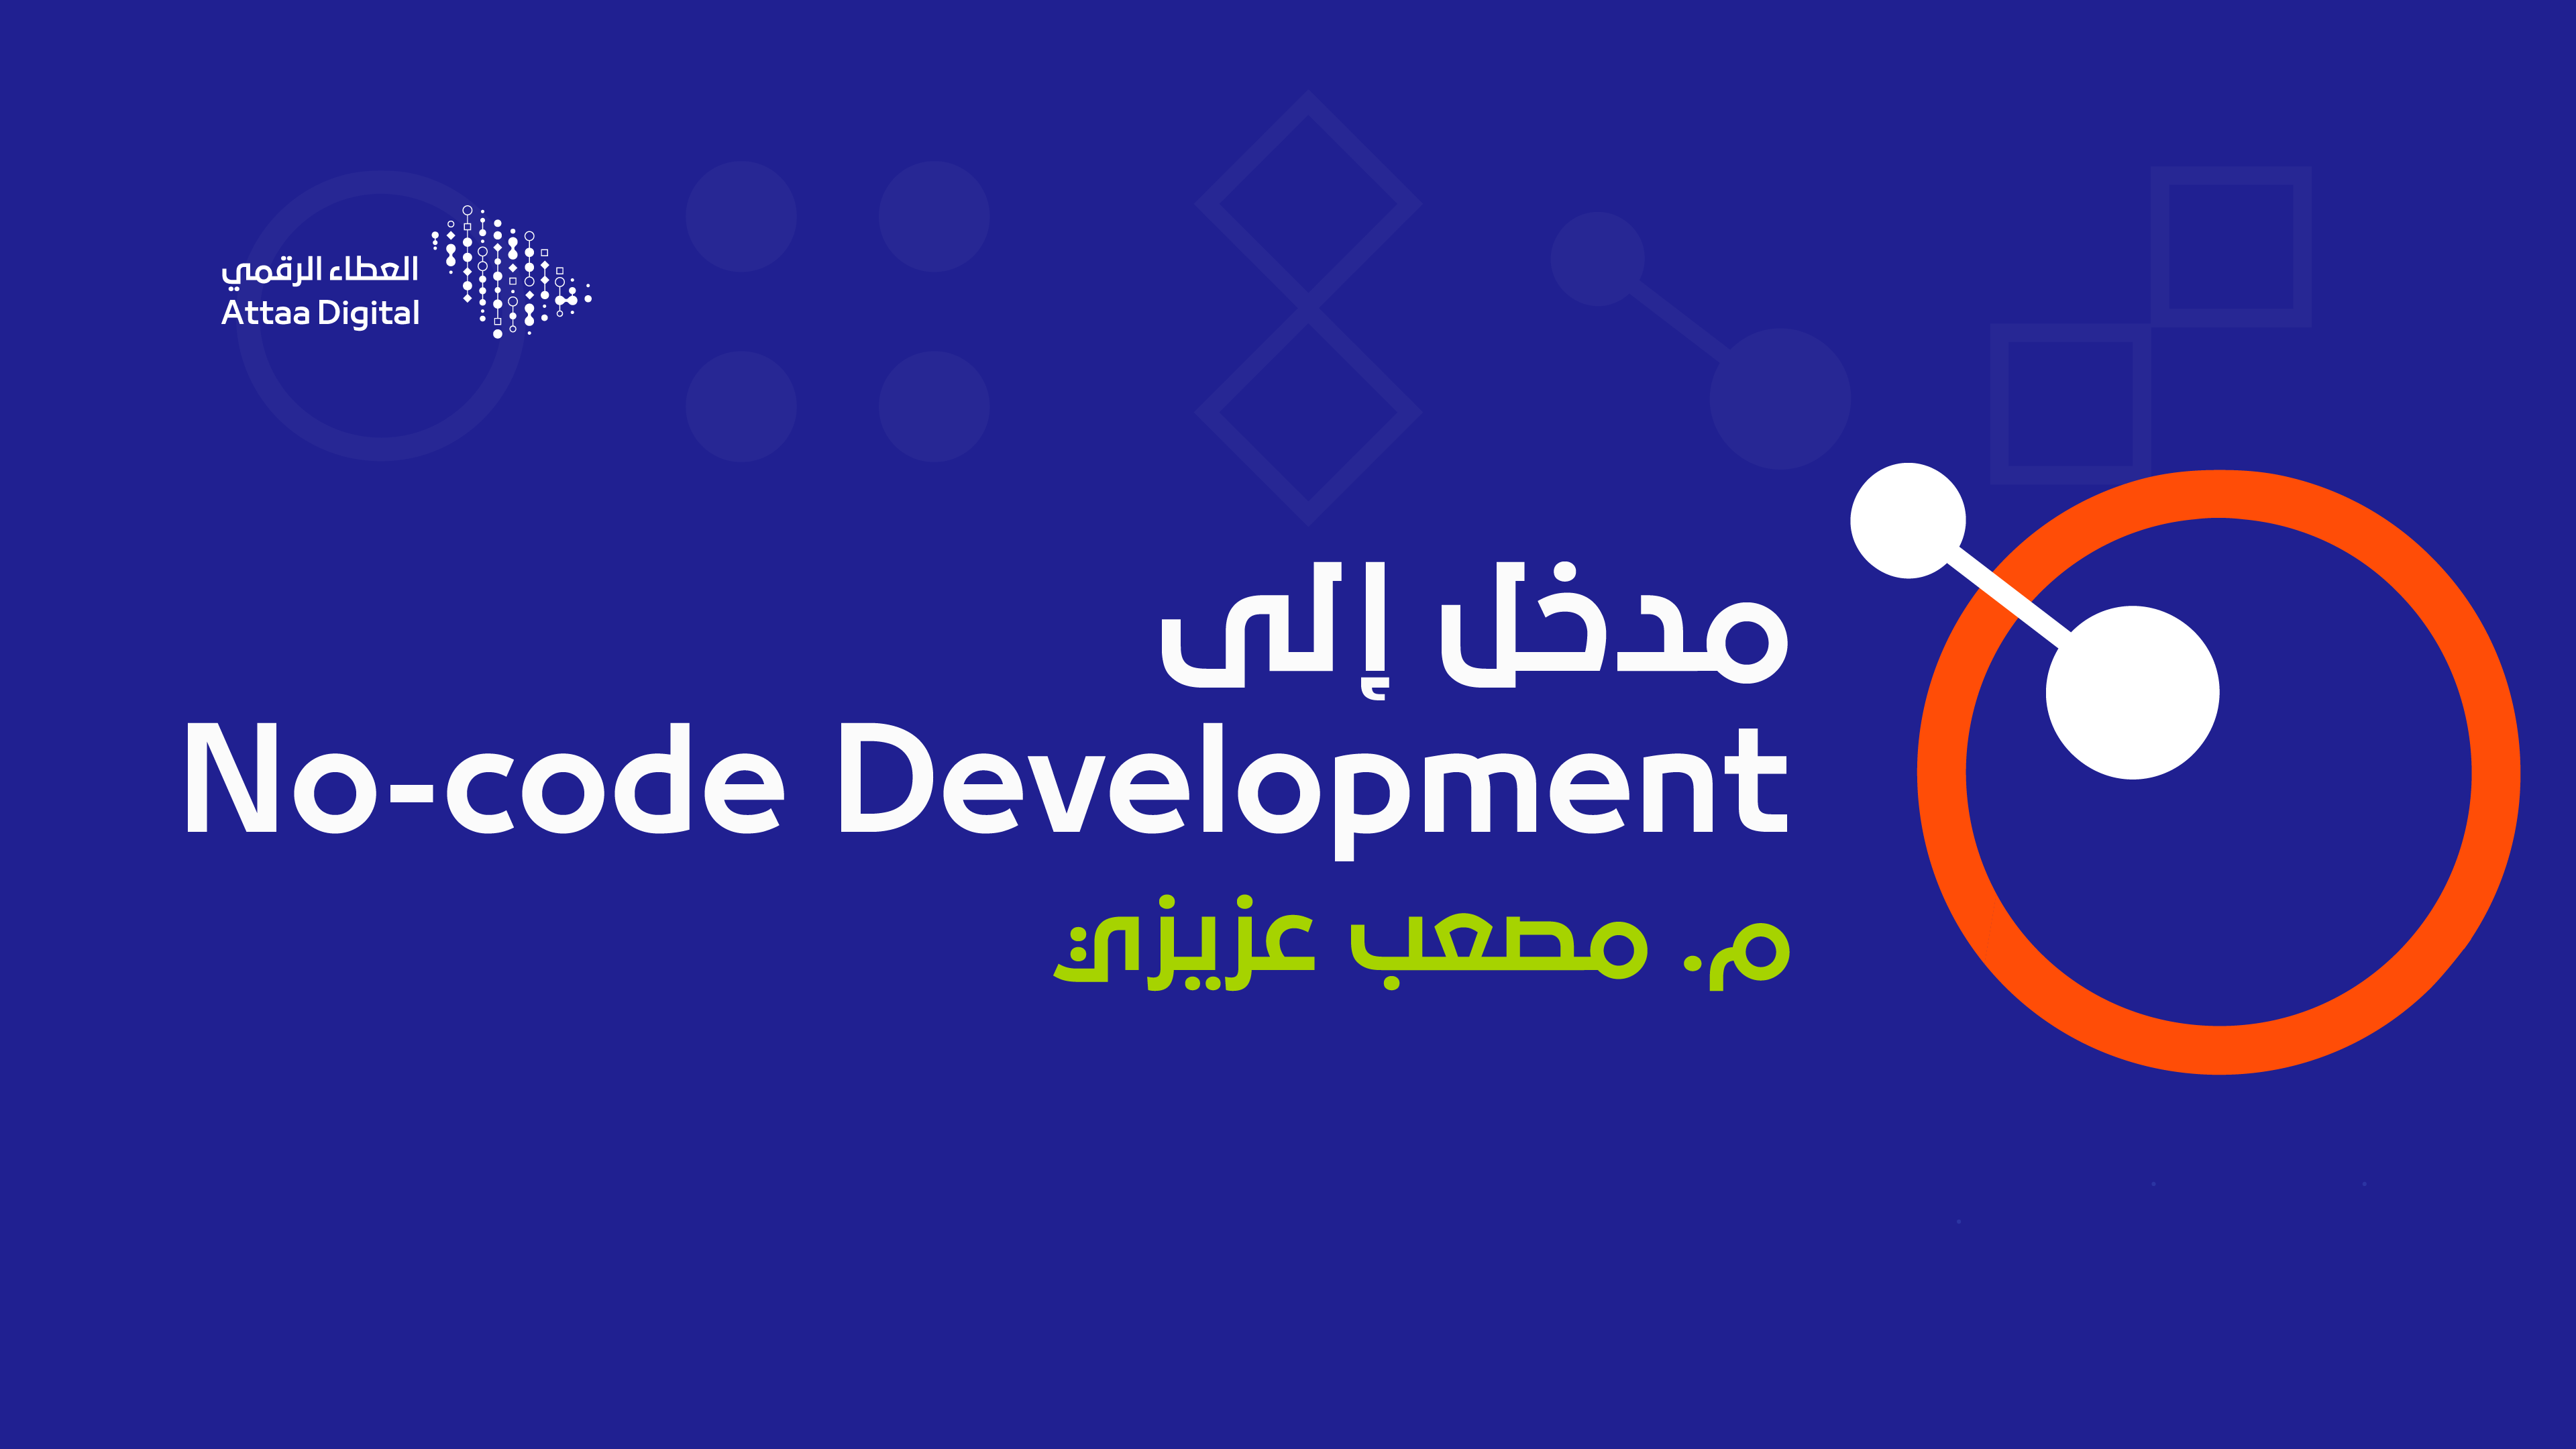 مدخل إلى No-code Development